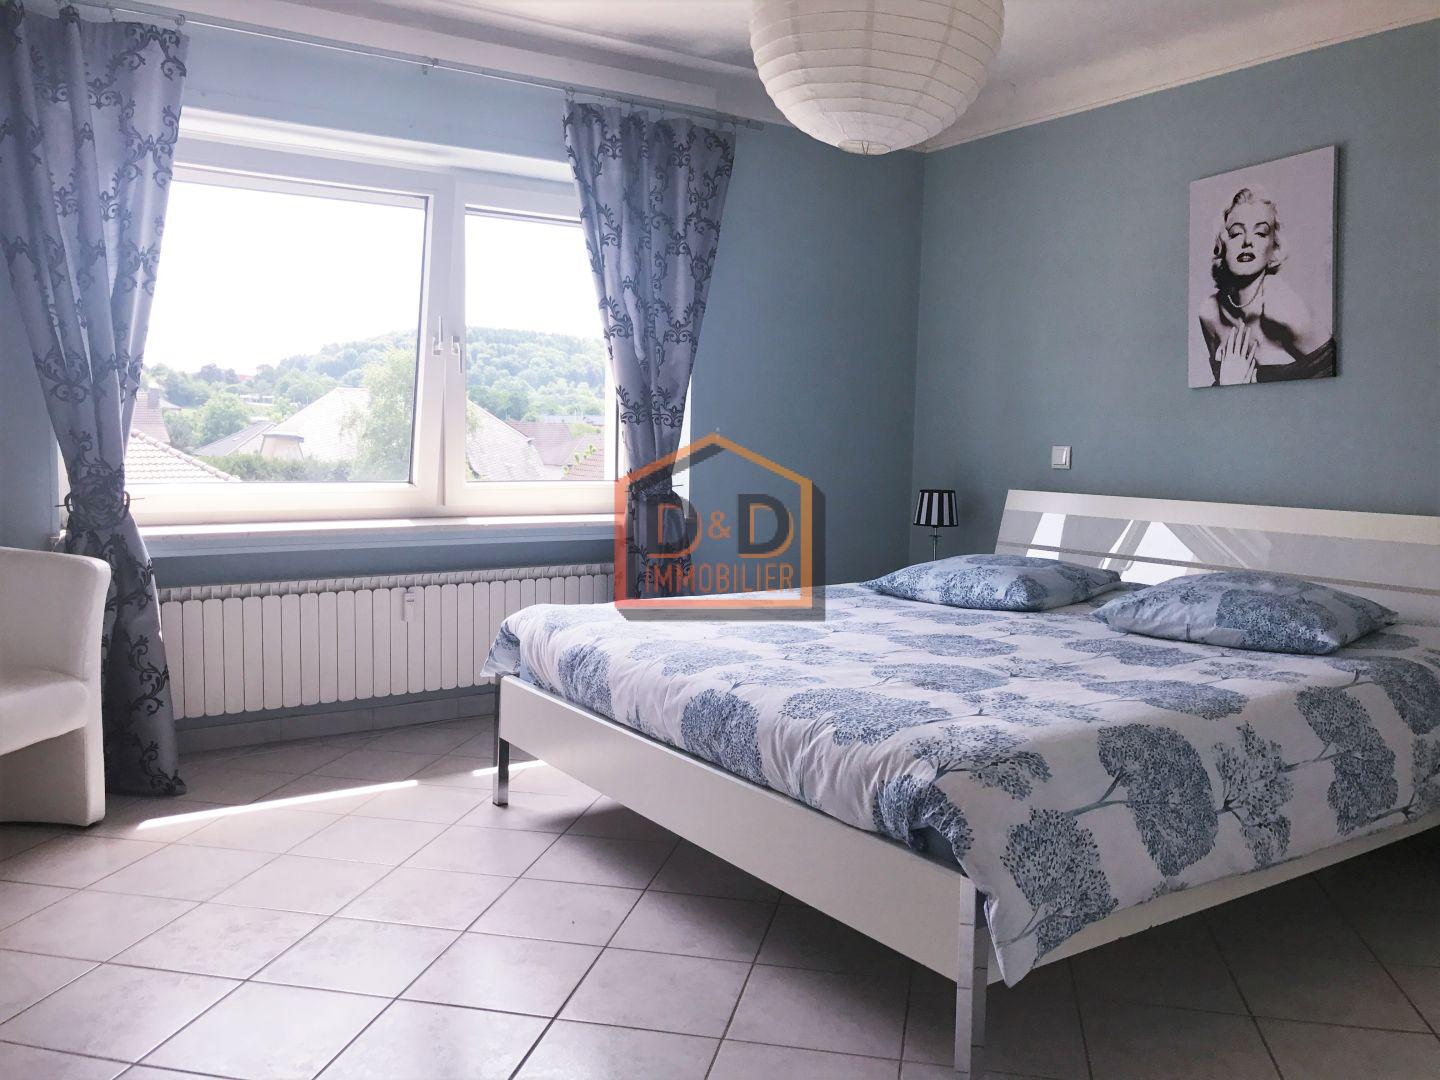 Appartement à Soleuvre, 65 m², 1 chambre, 1 salle de bain, 950 €/mois